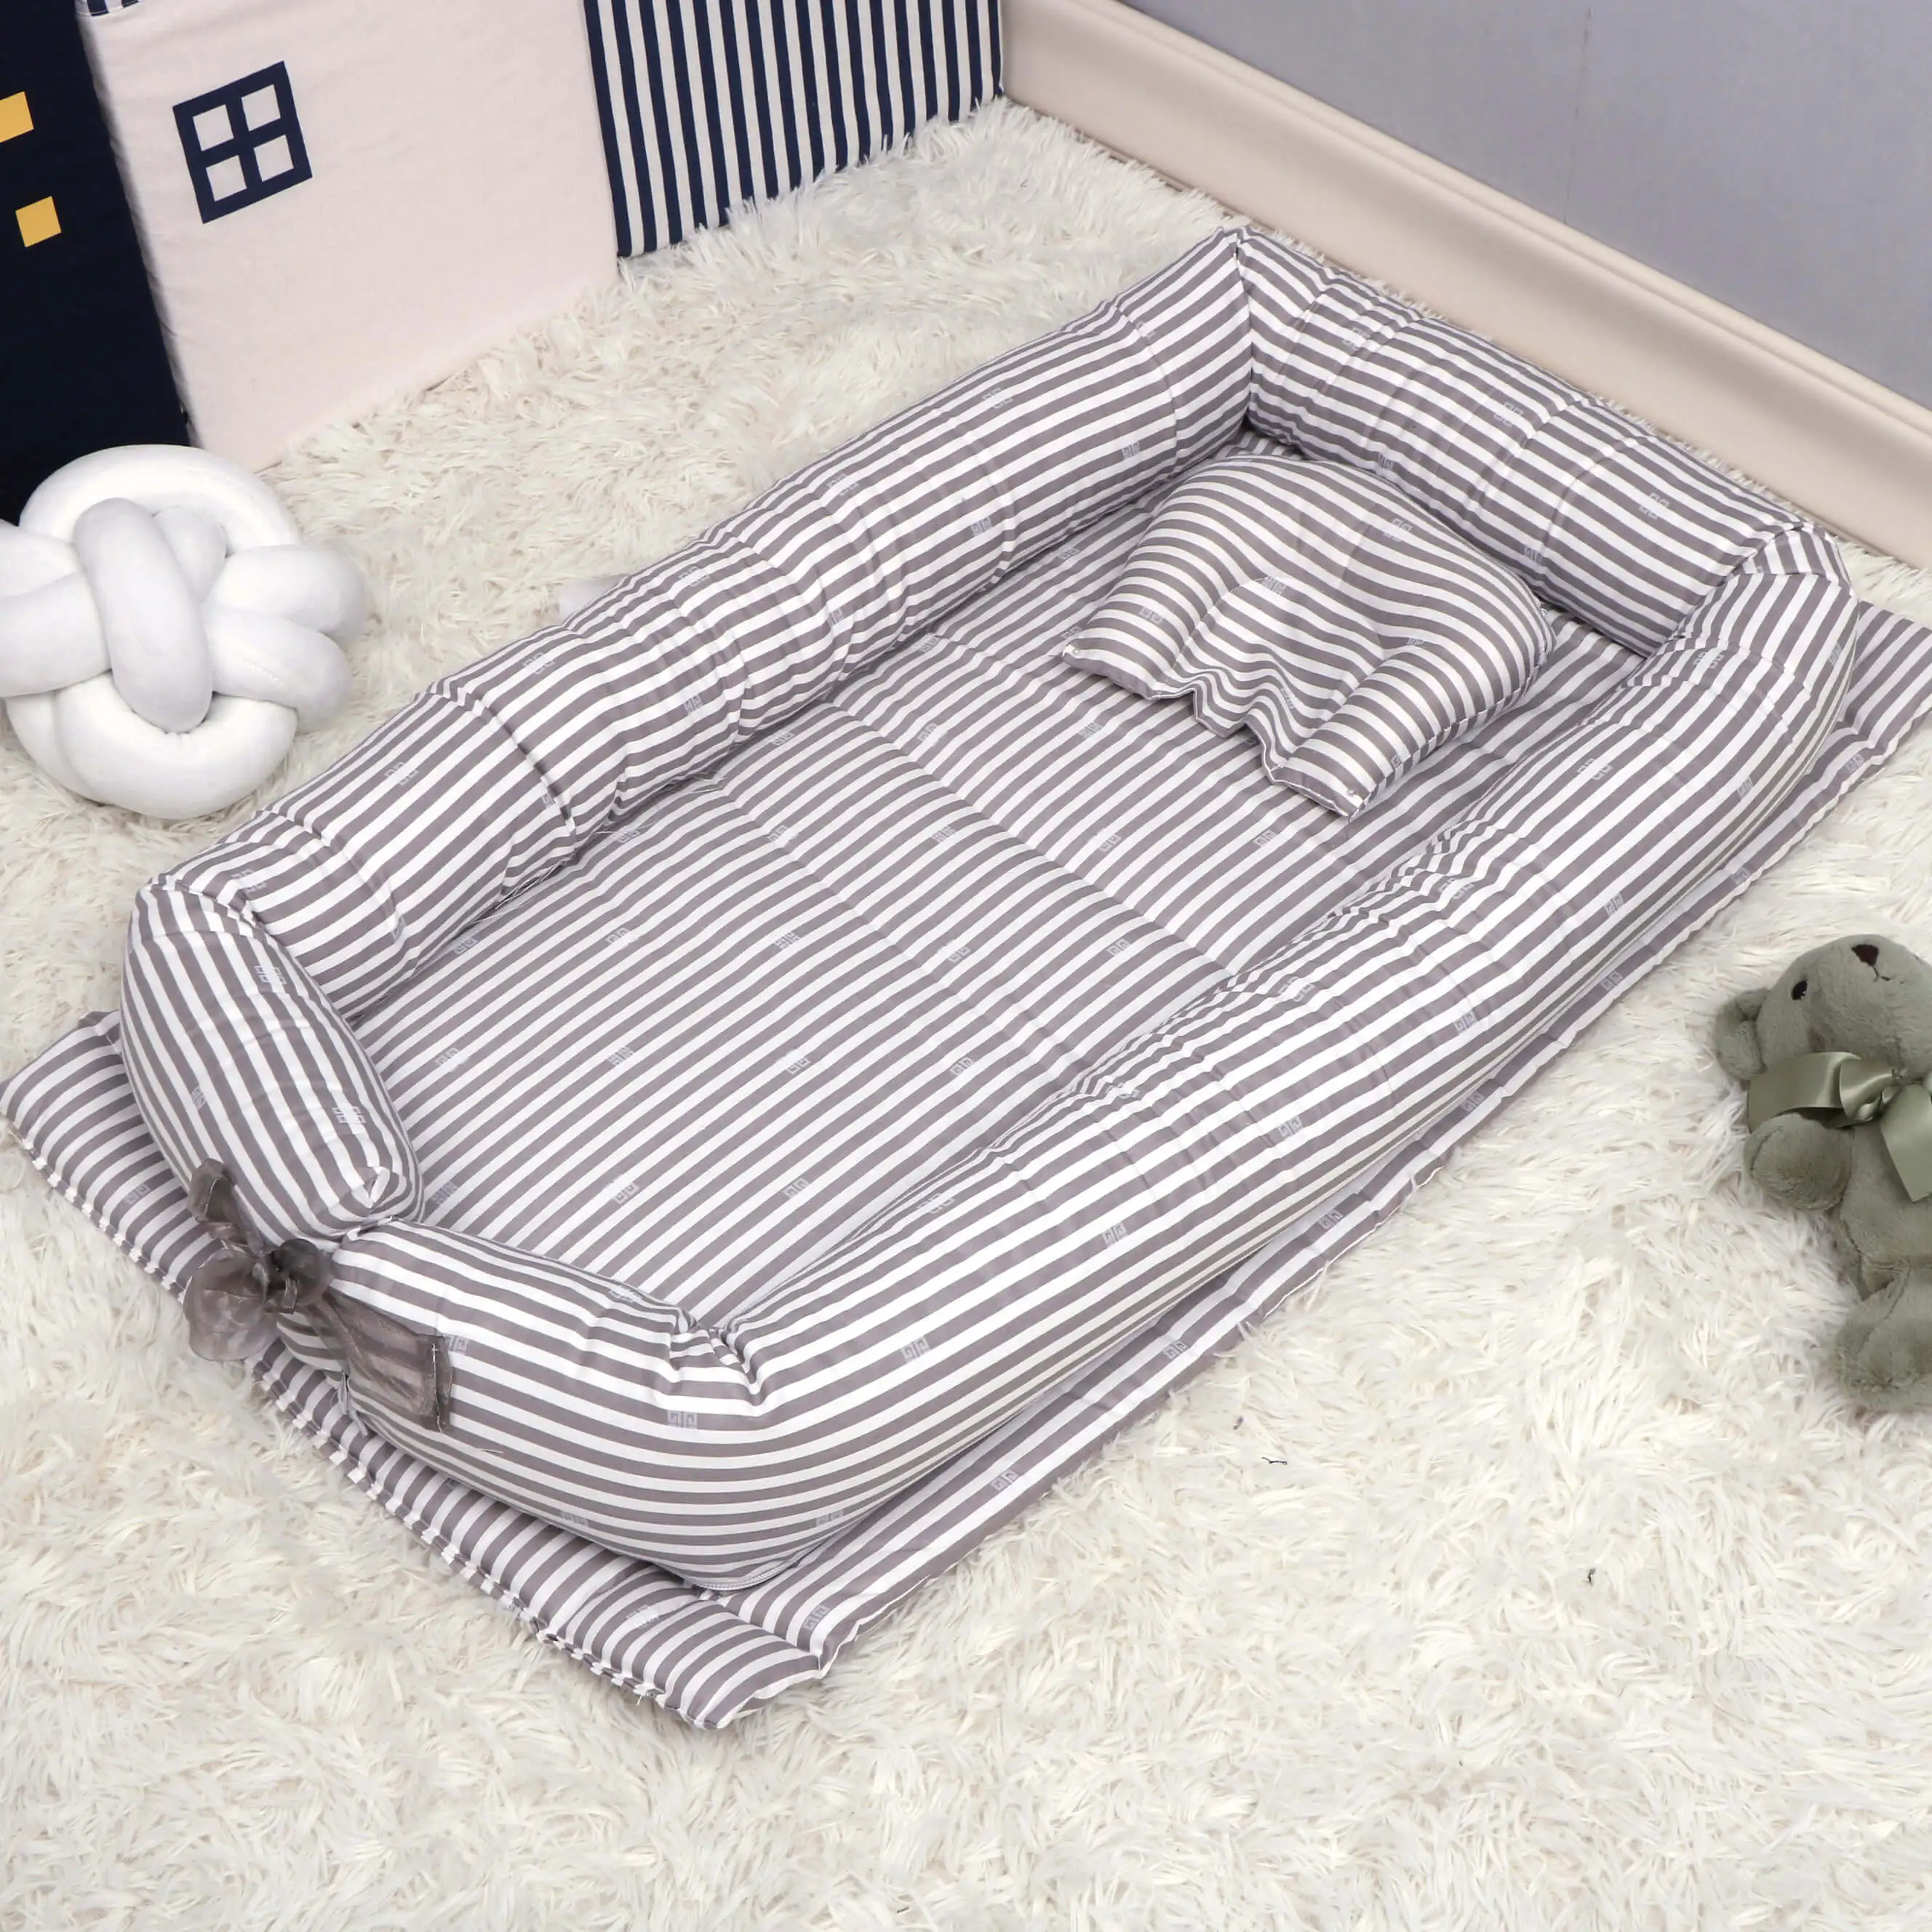 Оптовая продажа с фабрики детские кроватки для сна портативные бамперы